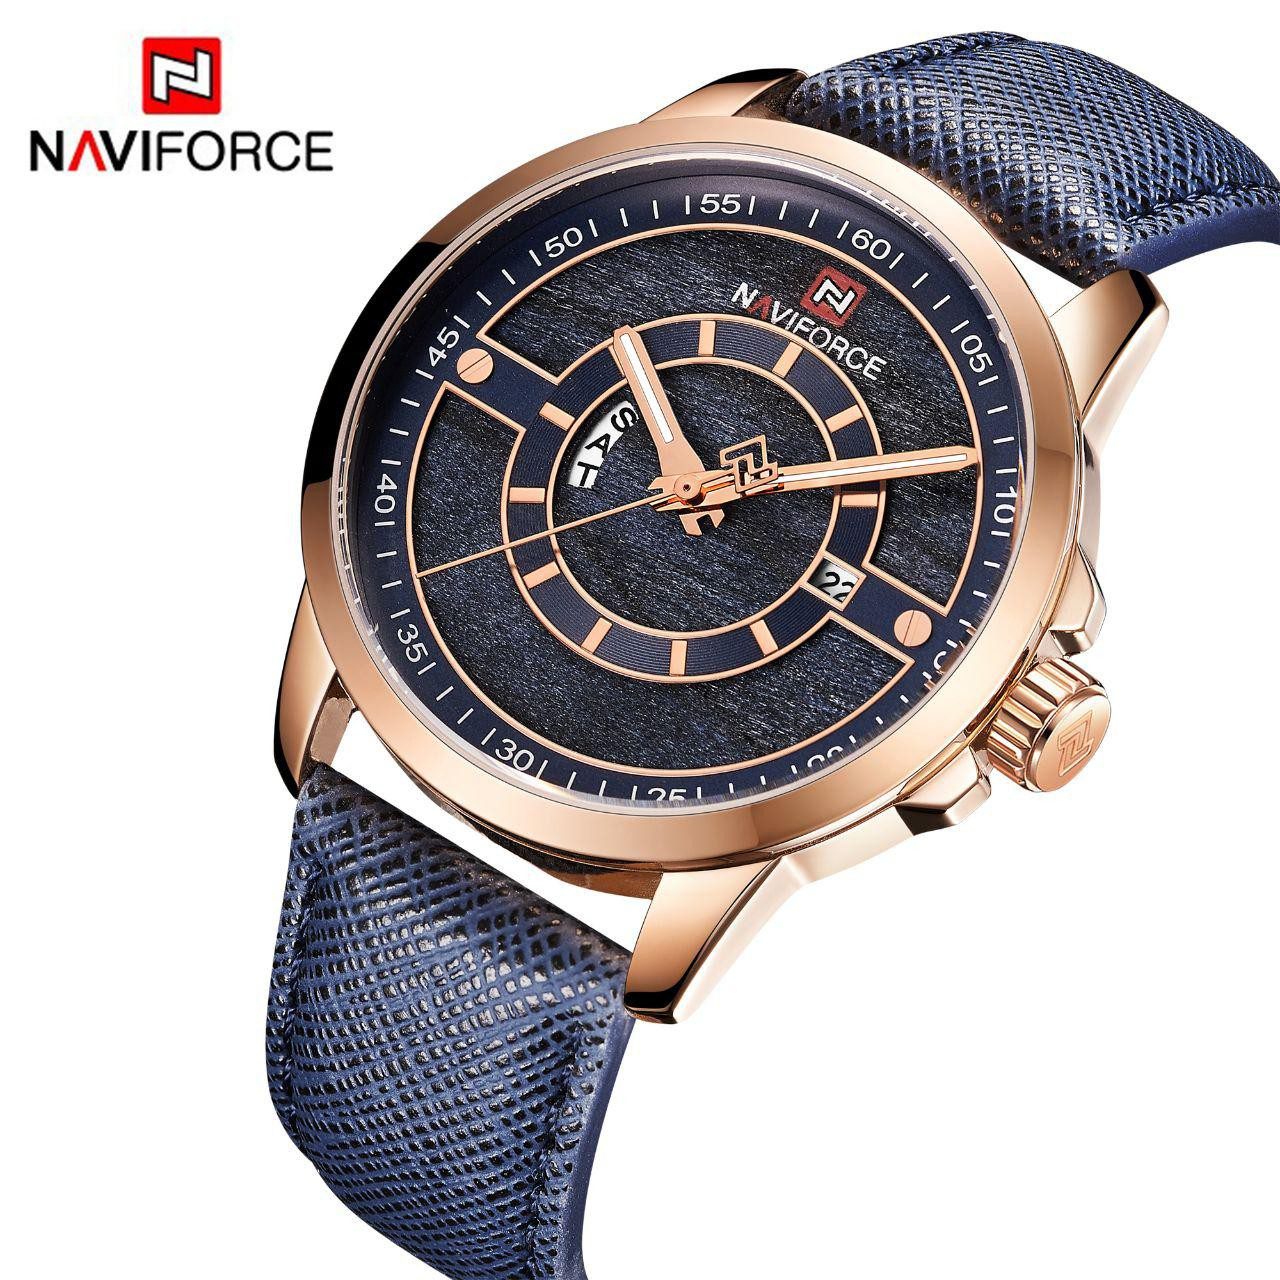 NAVIFORCE NF 9151 montre homme haut tendance marque de luxe étanche décontracté en cuir Quartz - Rose Or Bleu